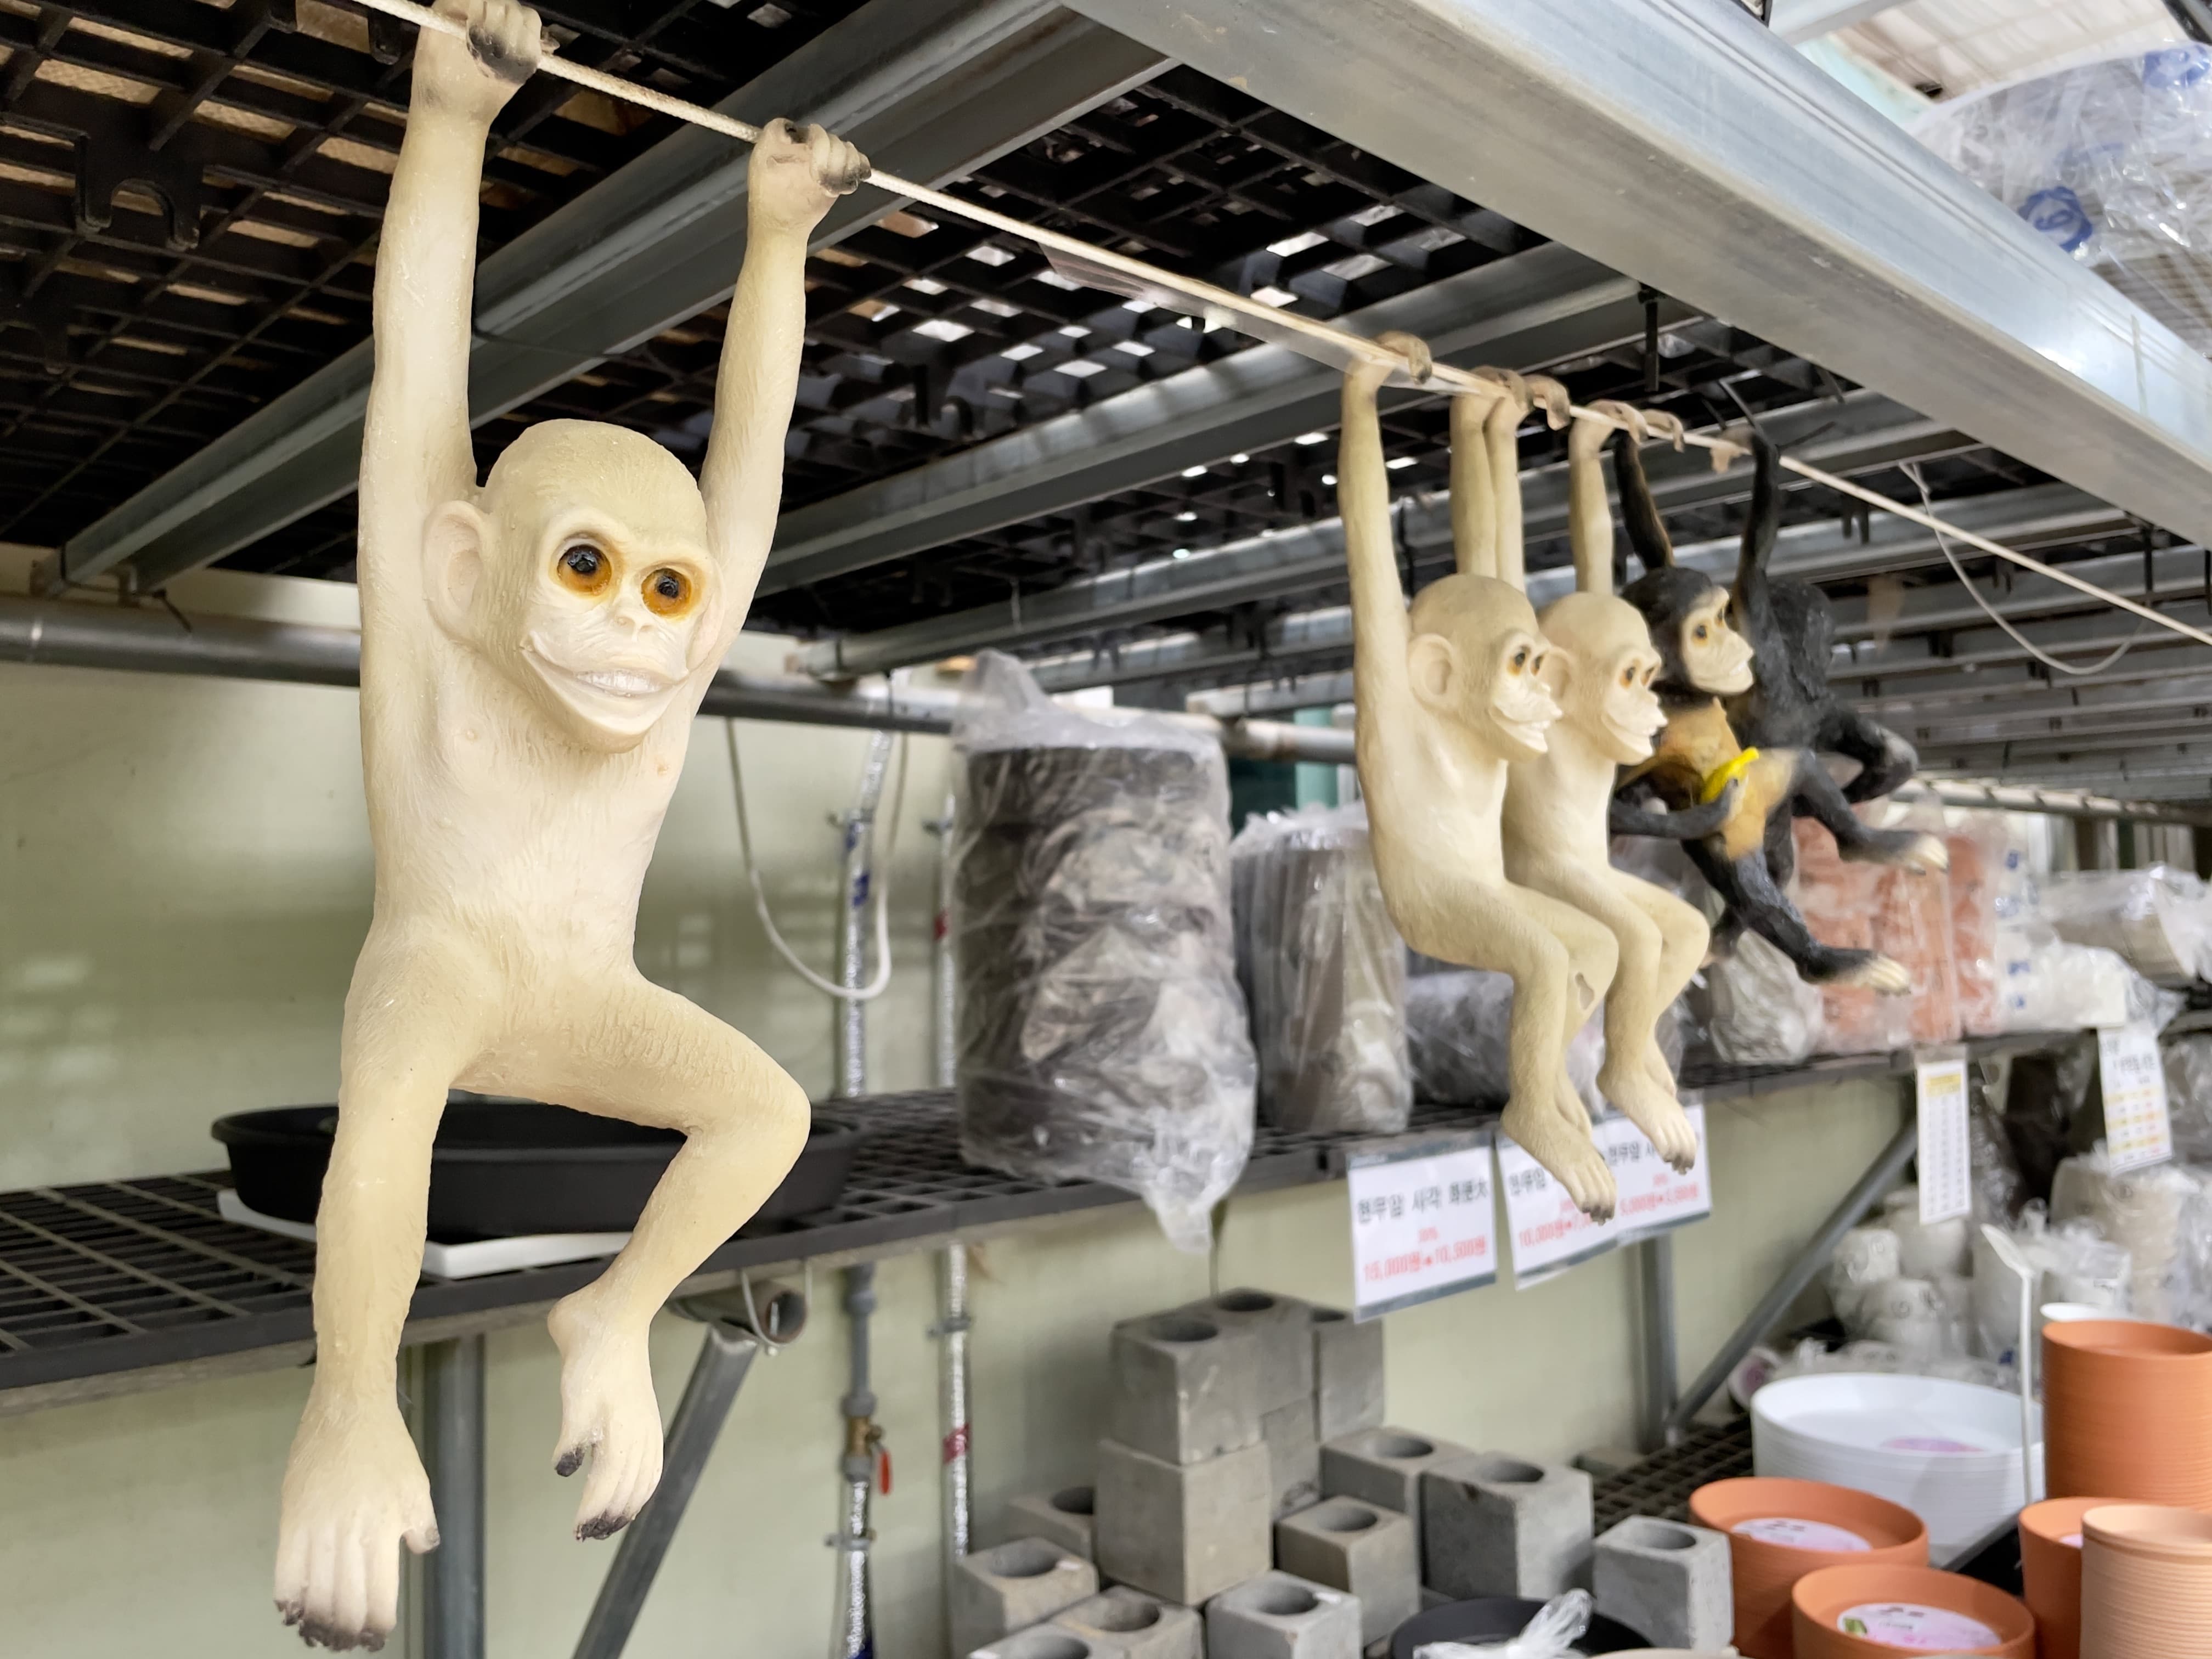 진열된 가드닝 도구들 위로 매달려 있는 원숭이 인형들